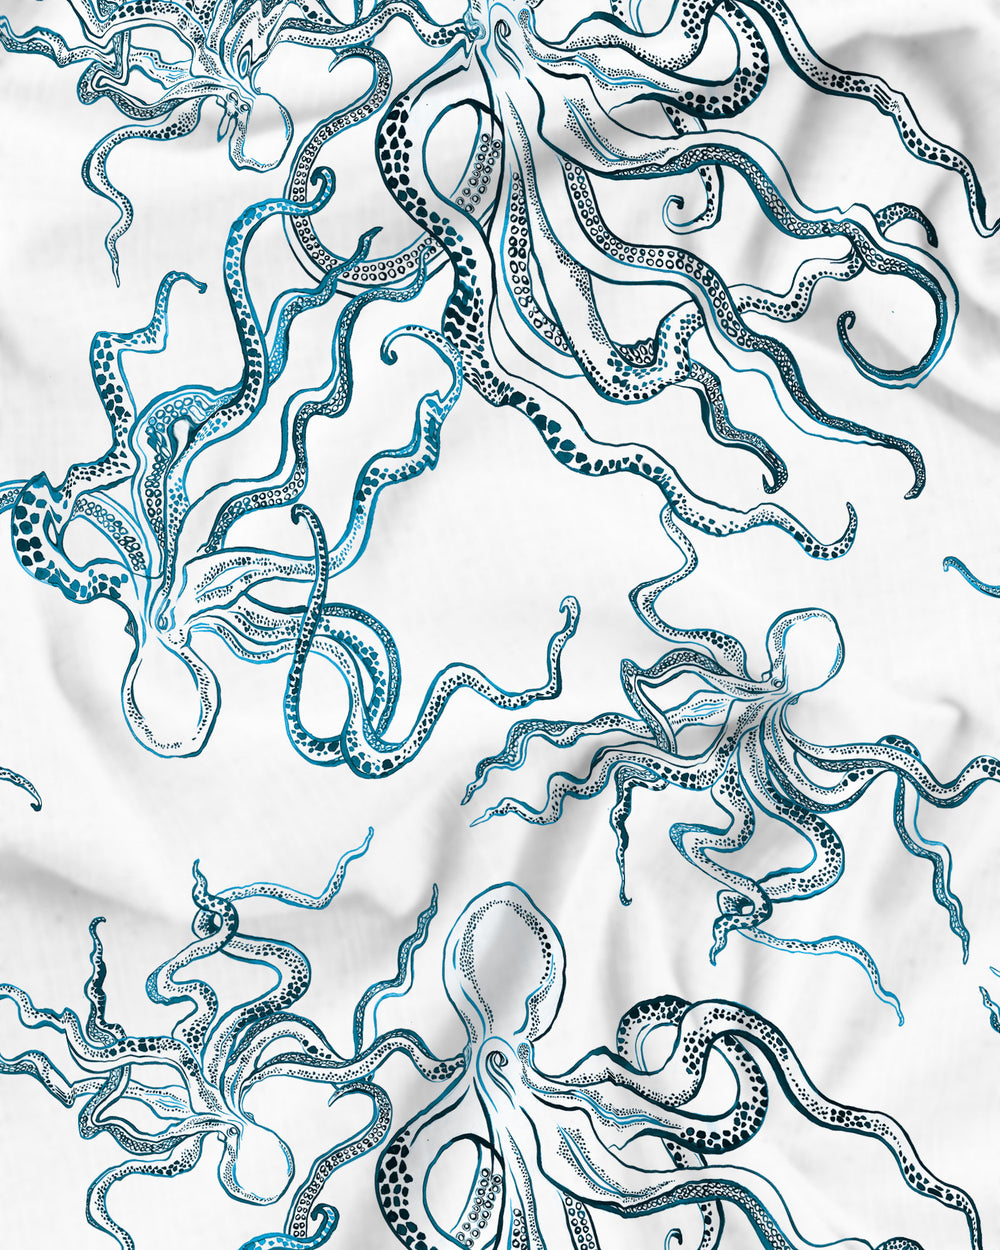 Octopus Indigo Pattern Detail - Woodstock Laundry UK